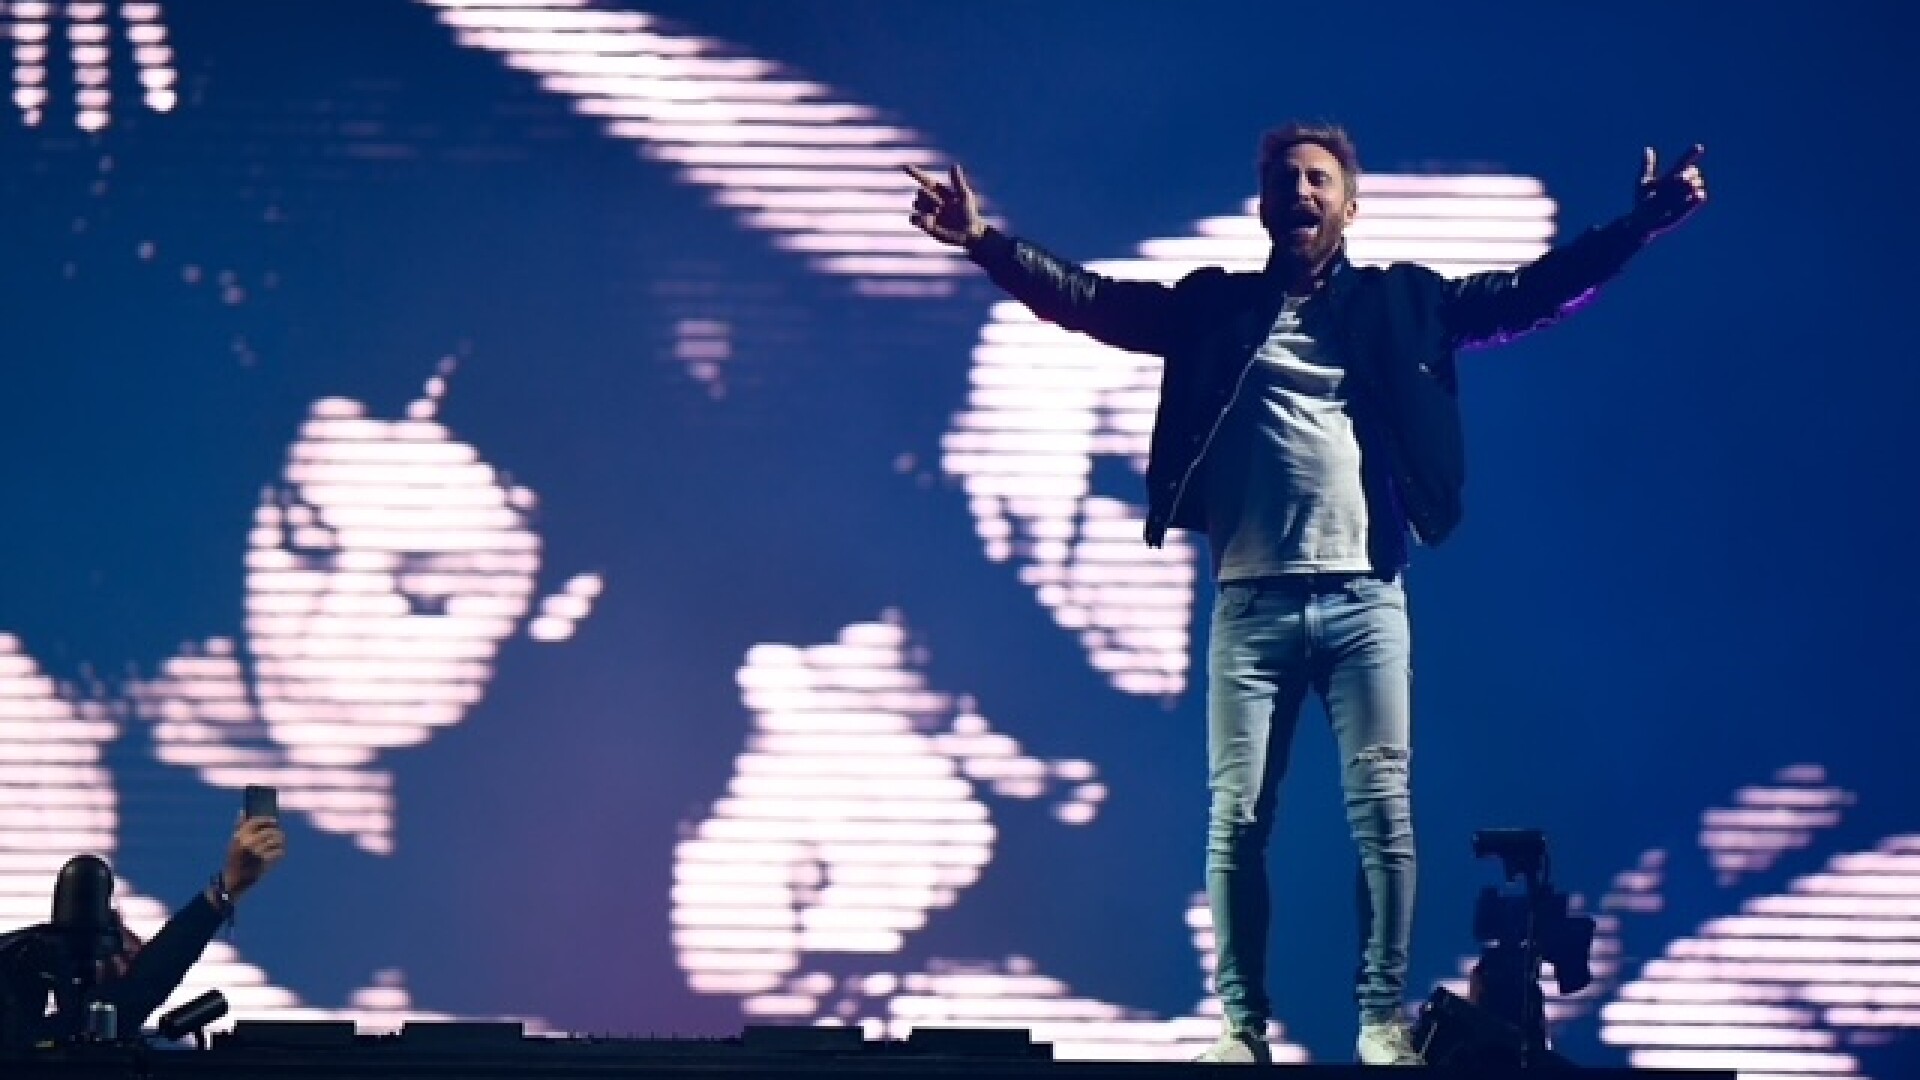 Contract de 100 mil. dolari pentru David Guetta, după lansarea piesei “Remember”, la un eveniment orgnizat de UNTOLD